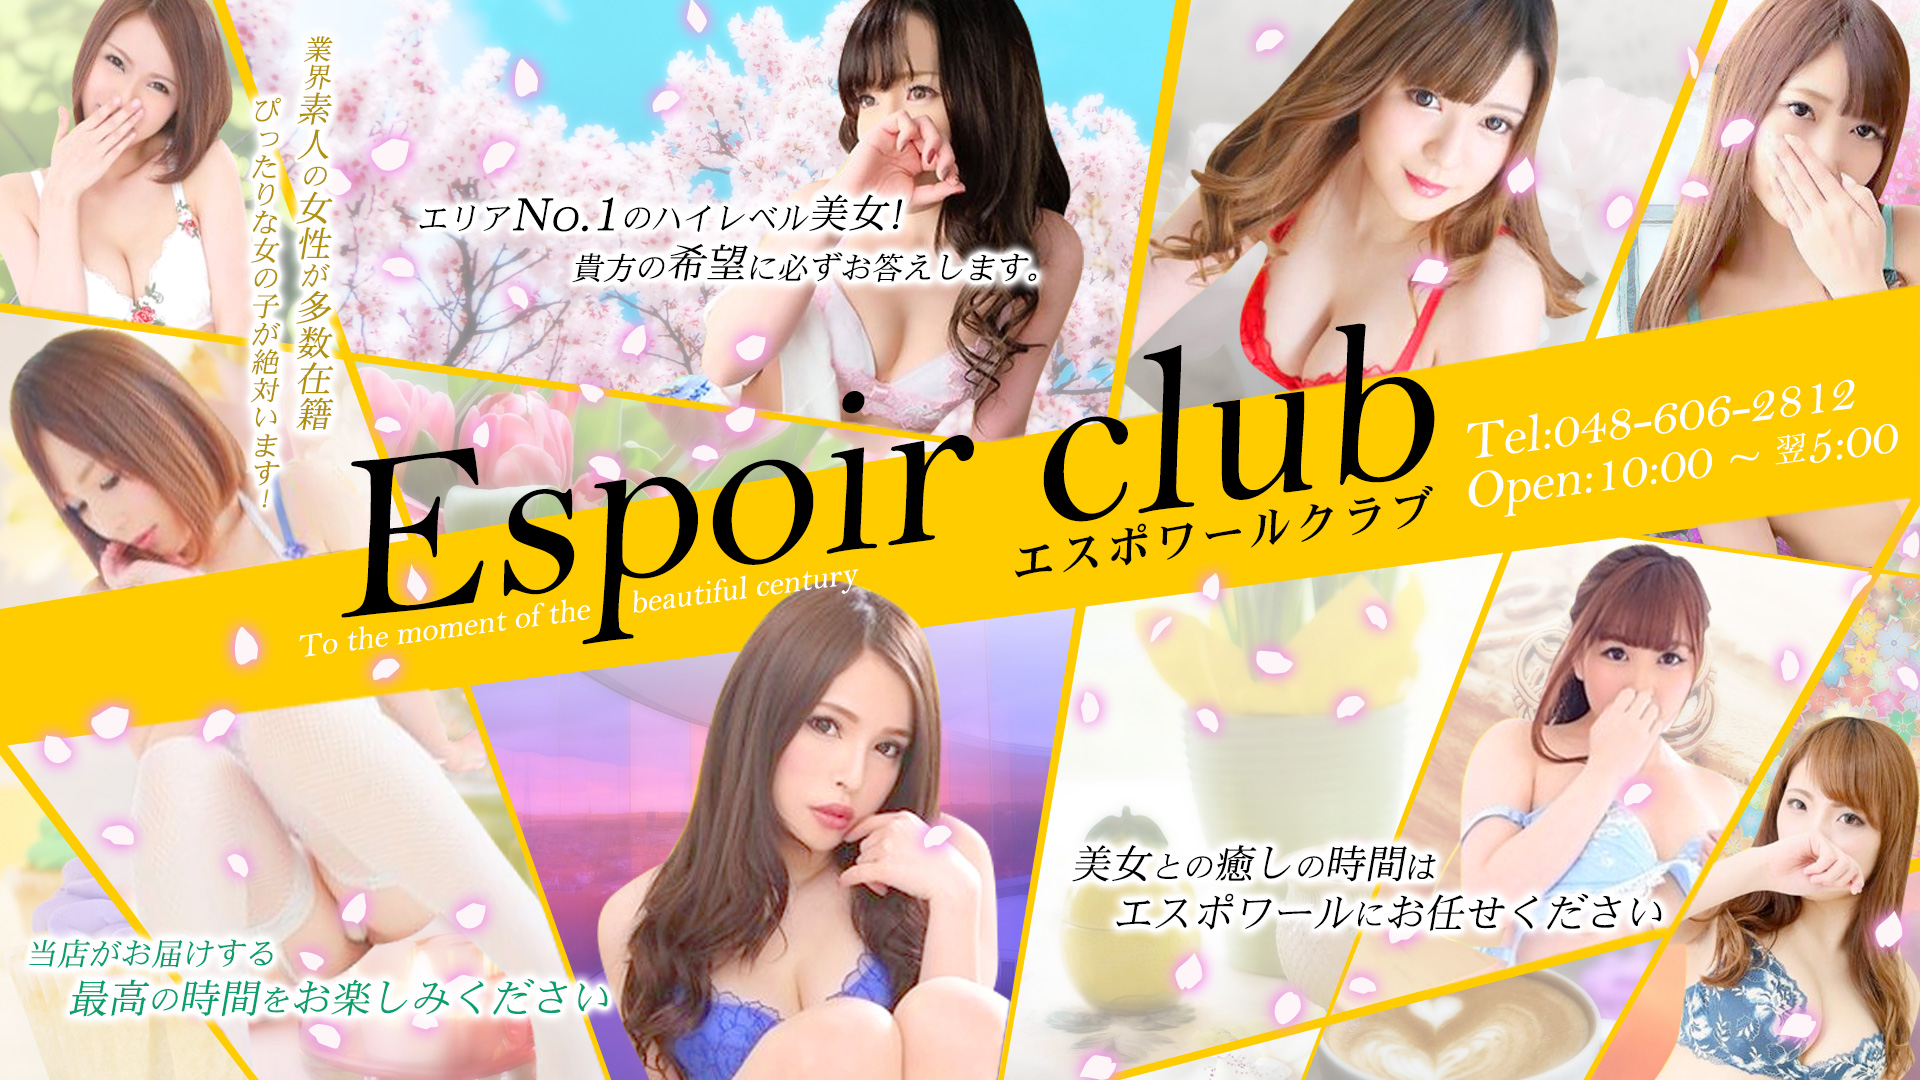 Espoir club(エスポワールクラブ)